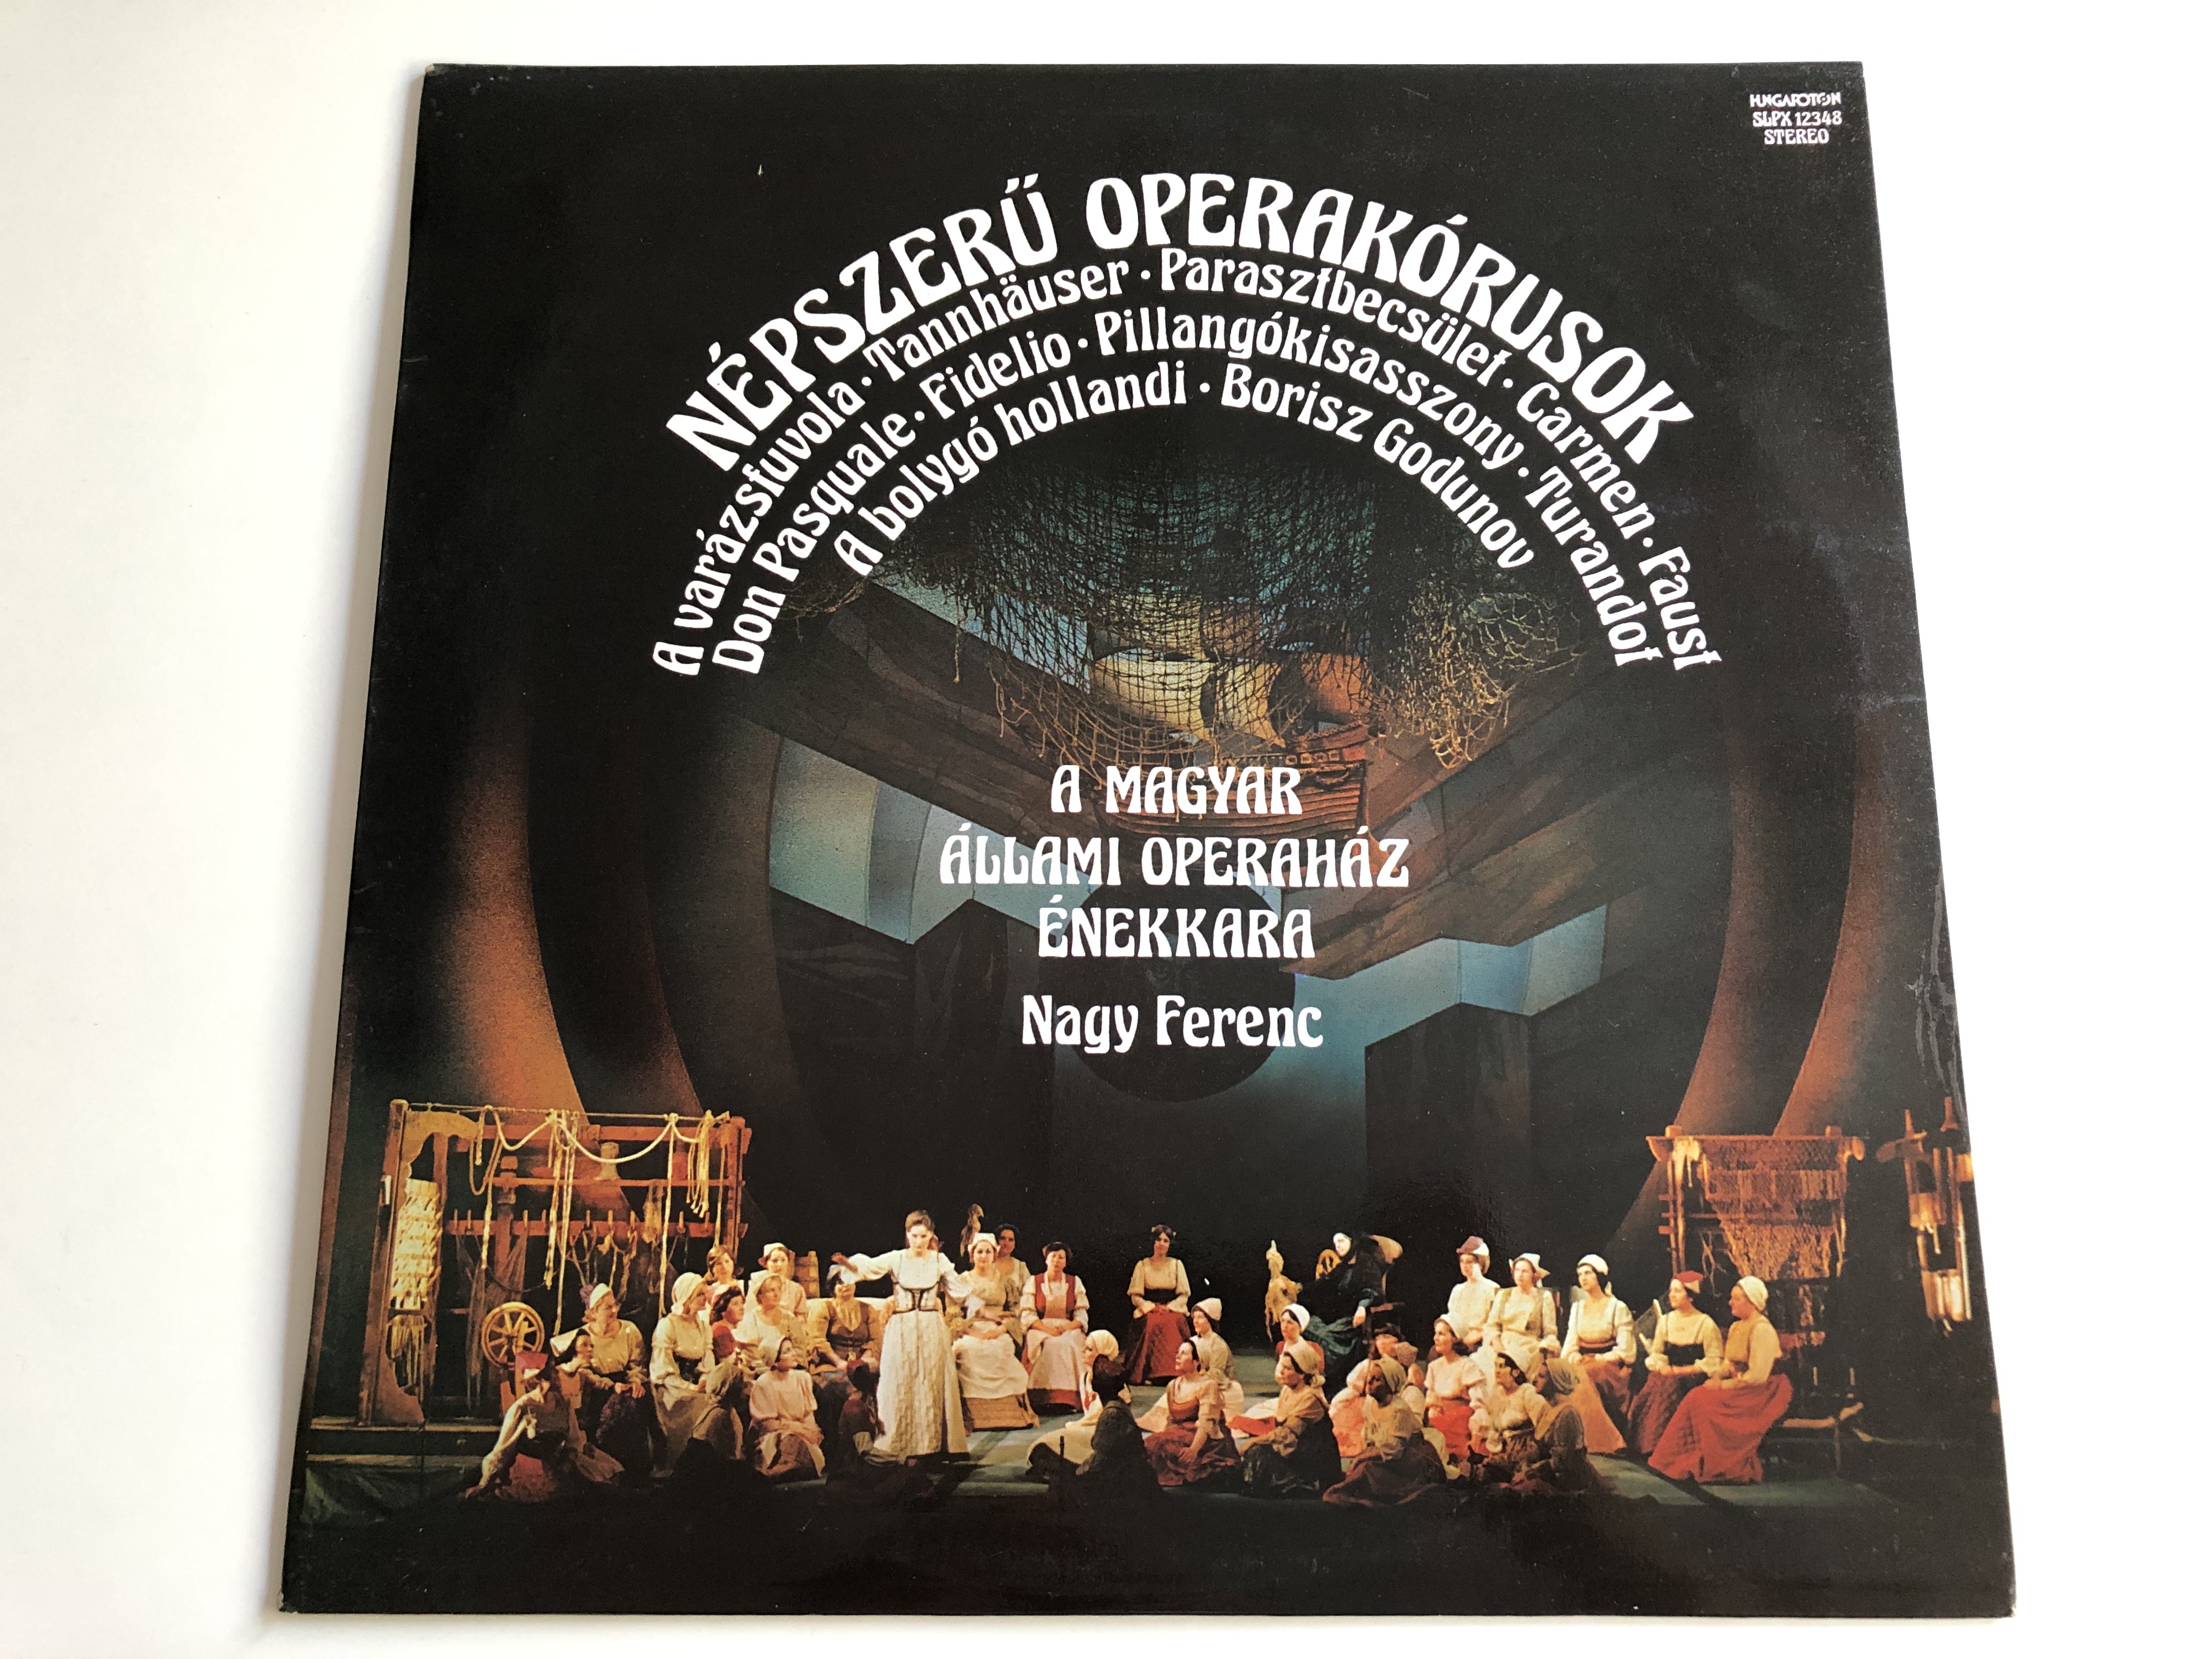 n-pszer-operak-rusok-conducted-nagy-ferenc-magyar-llami-operah-z-nekkara-hungaroton-lp-stereo-slpx-12348-1-.jpg